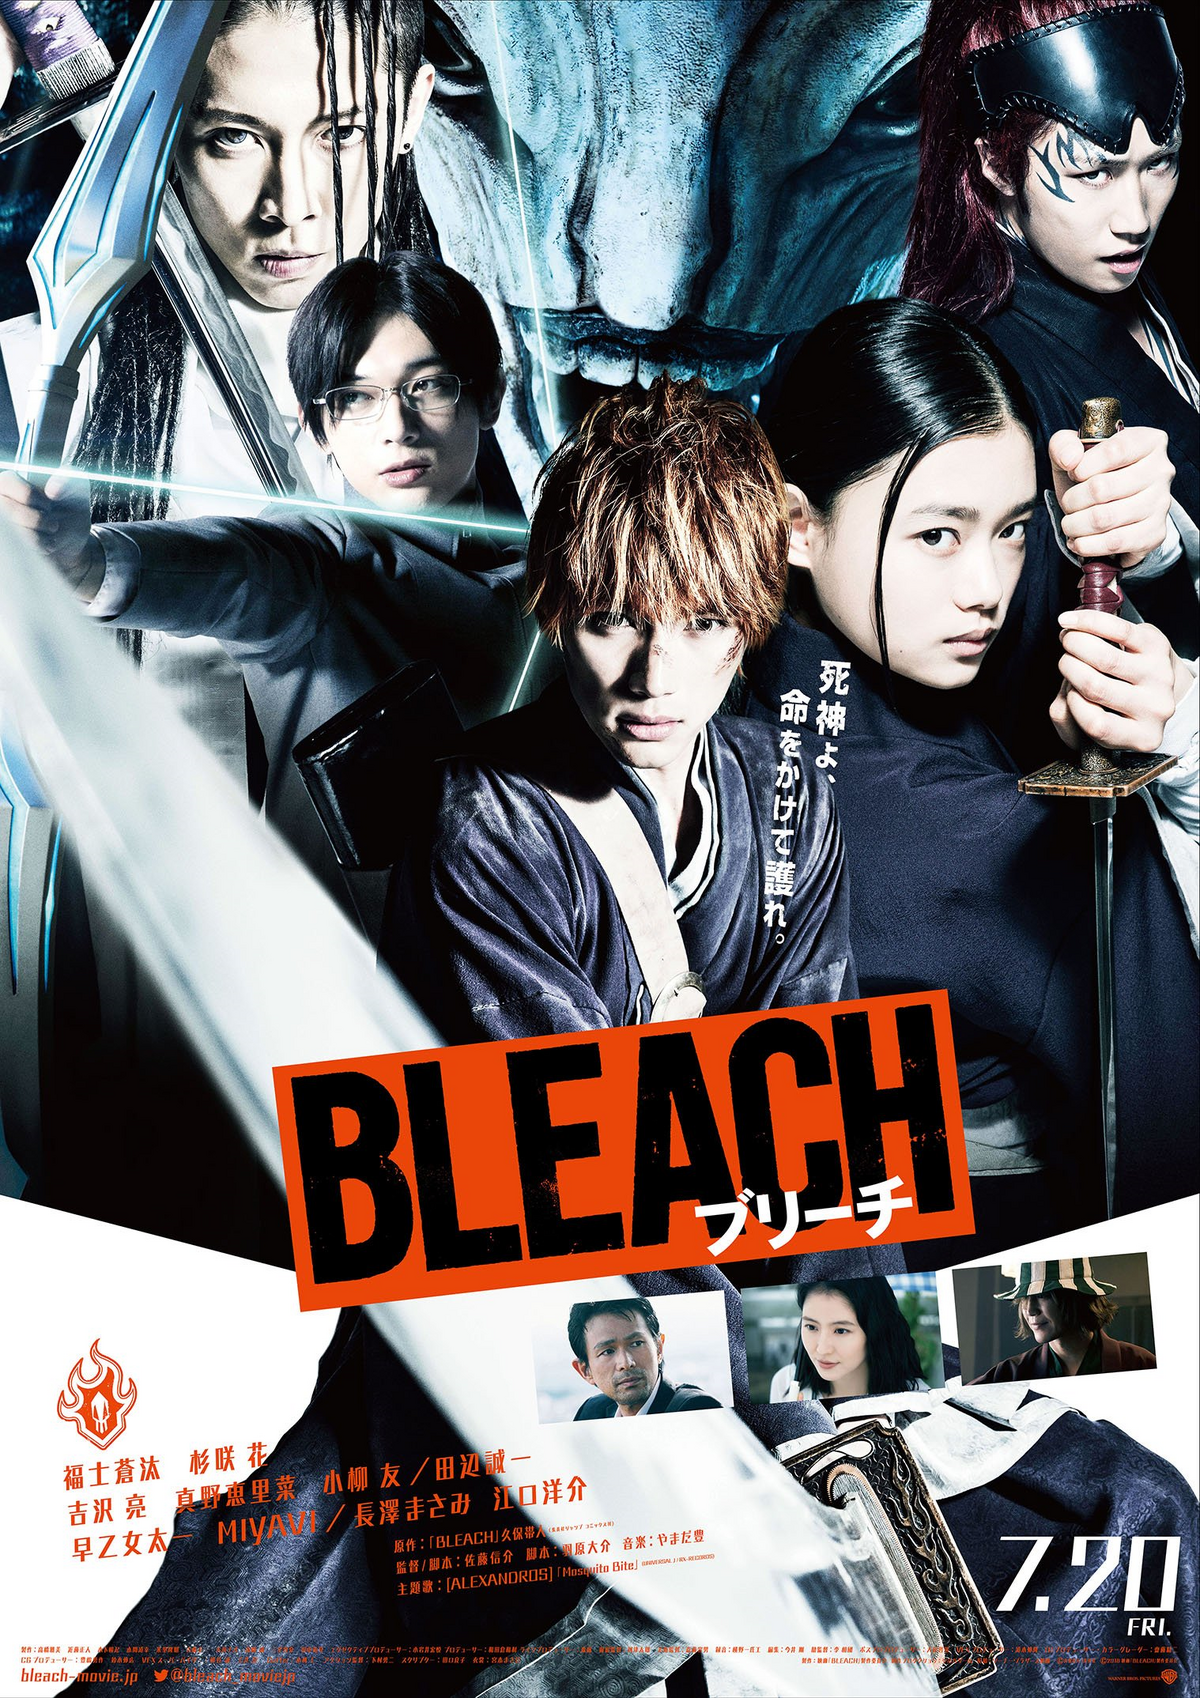 Bleach Ichigo Fullbring Bankai Metal Poster Metal Poster – Anime